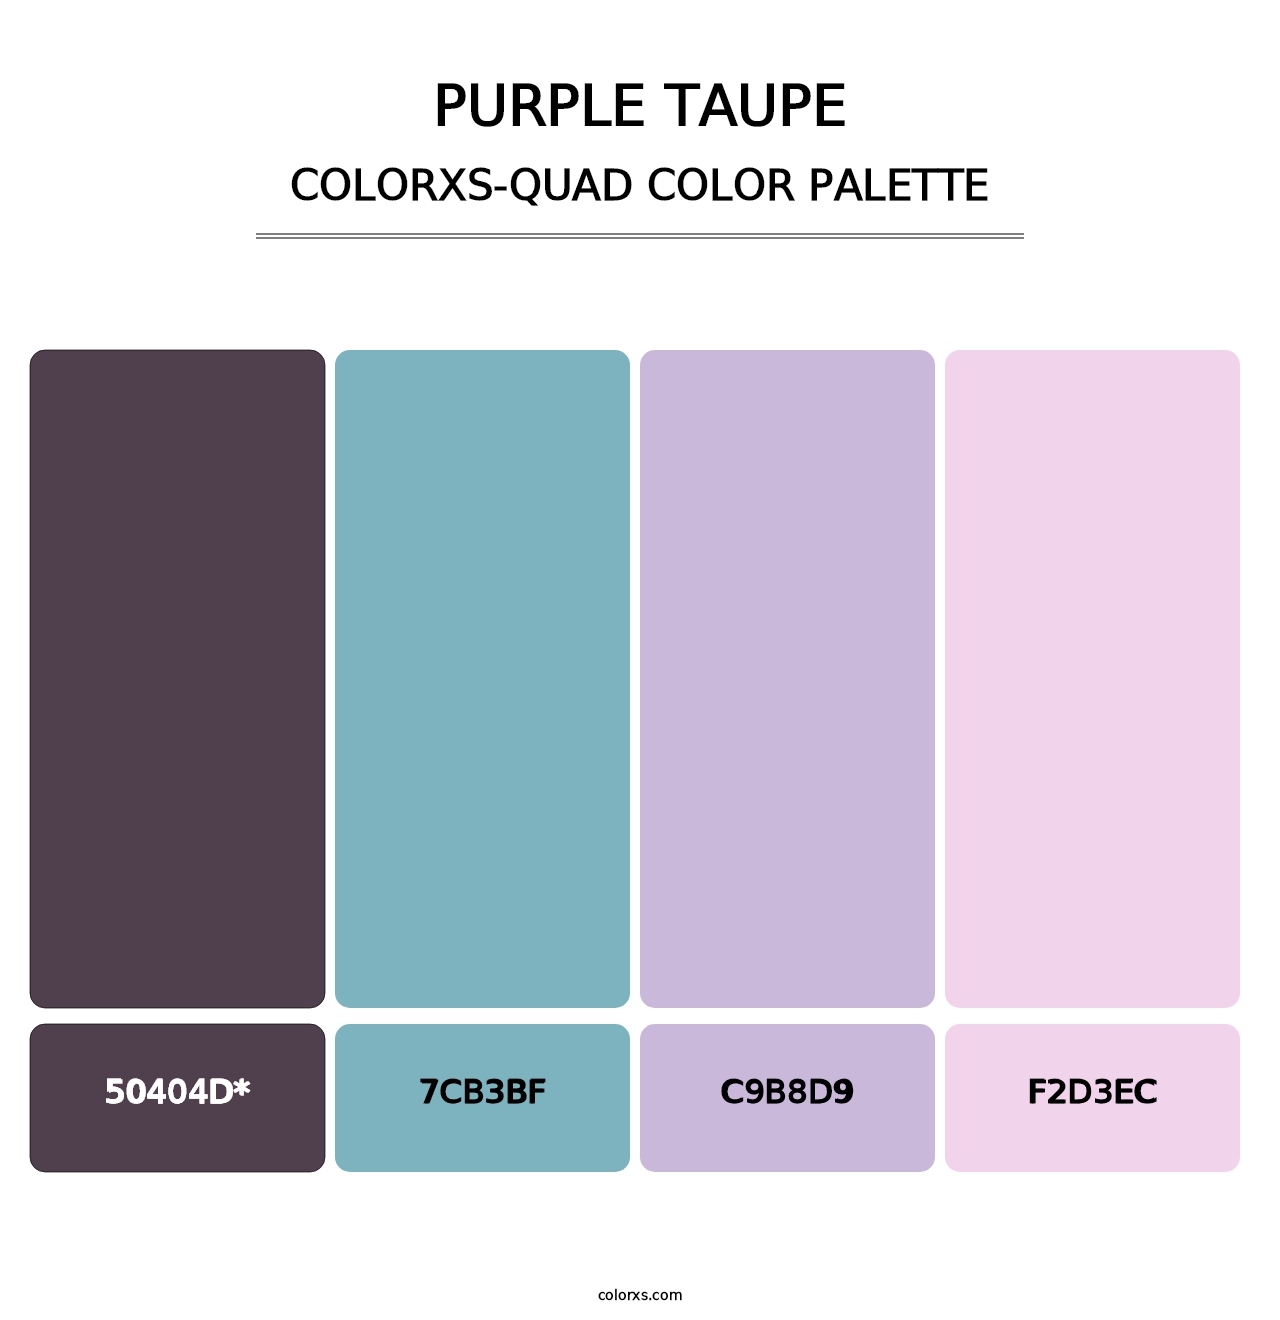 Purple Taupe - Colorxs Quad Palette